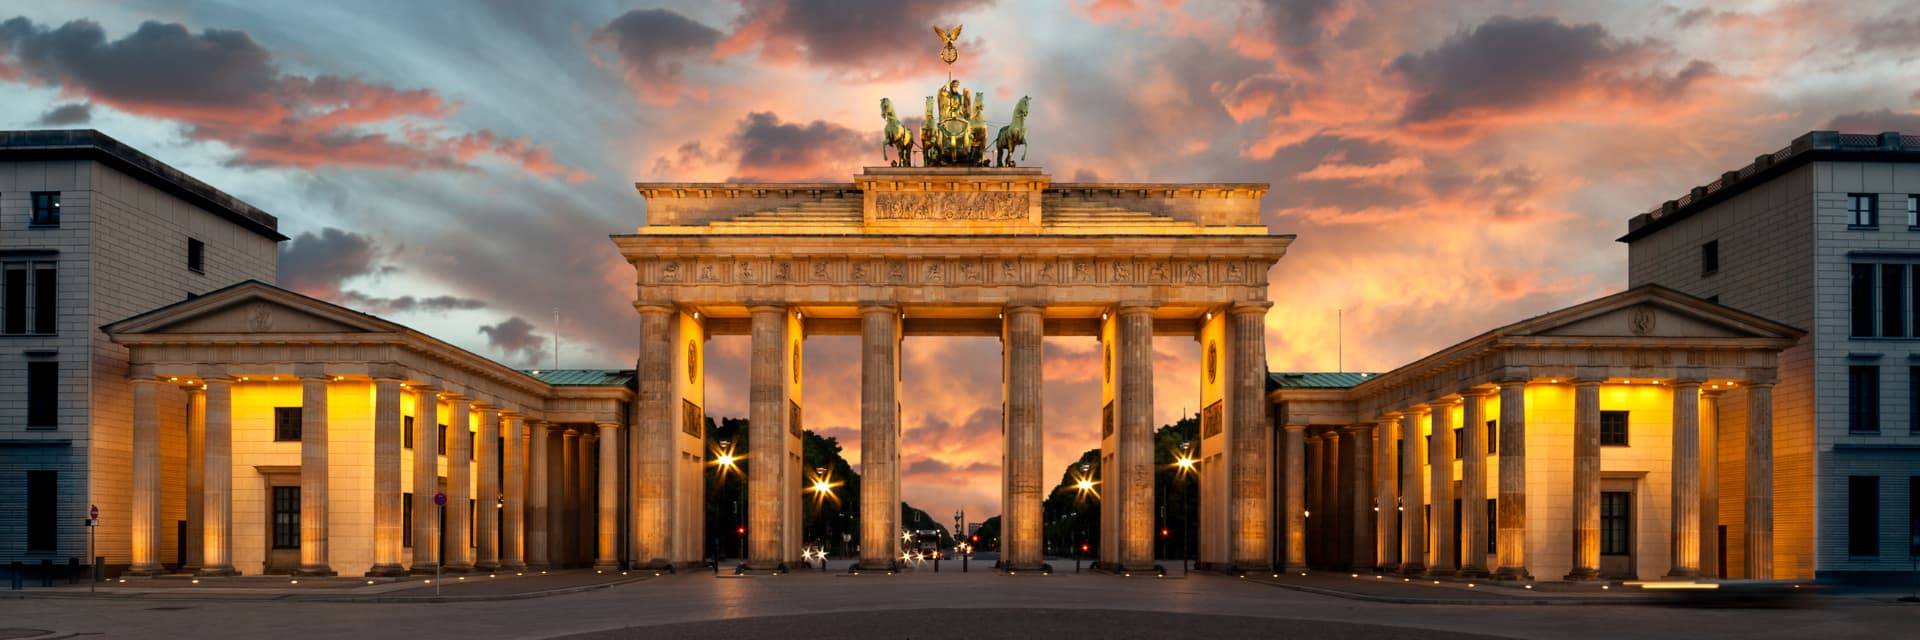 La Puerta de Brandeburgo: el símbolo de Berlín